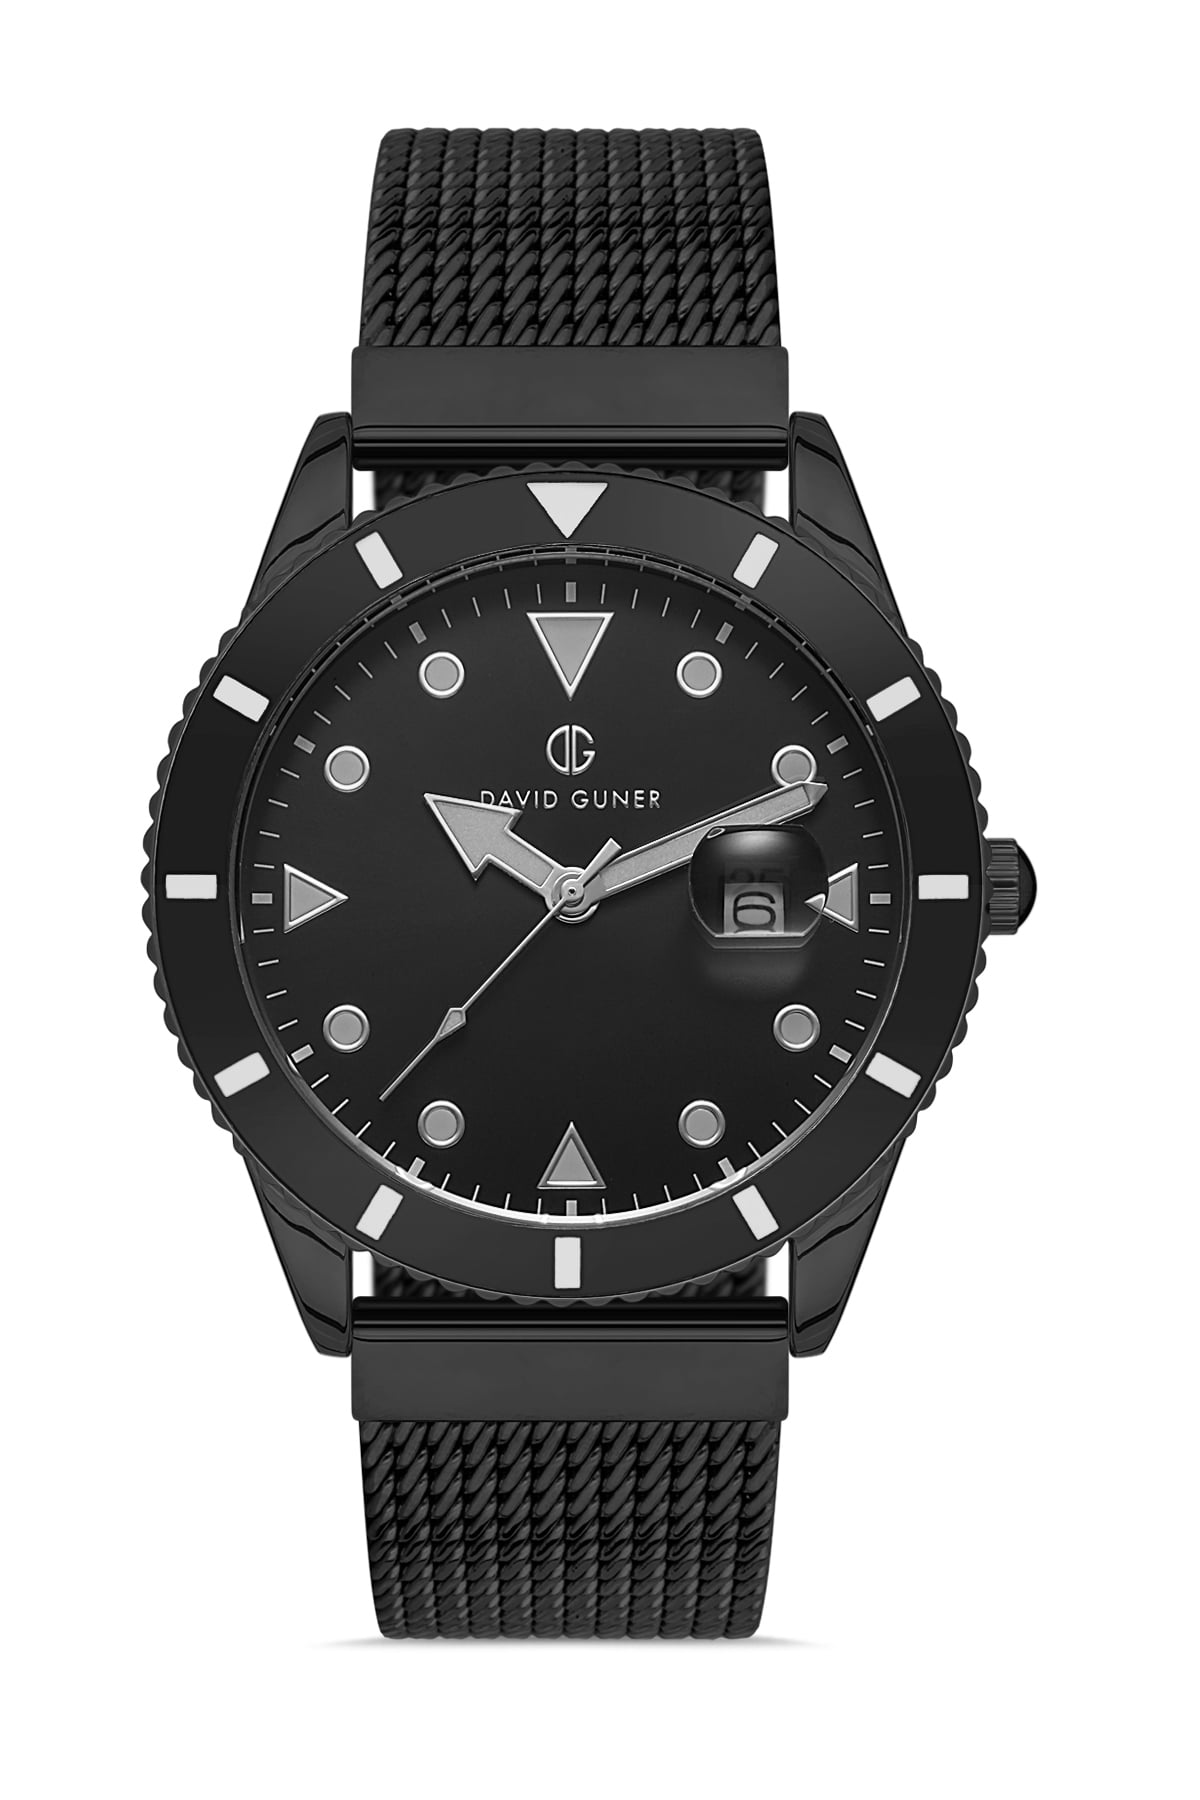 Davıd Guner Gun Coated Calendar Men's Wristwatch with Steel Braided Strap